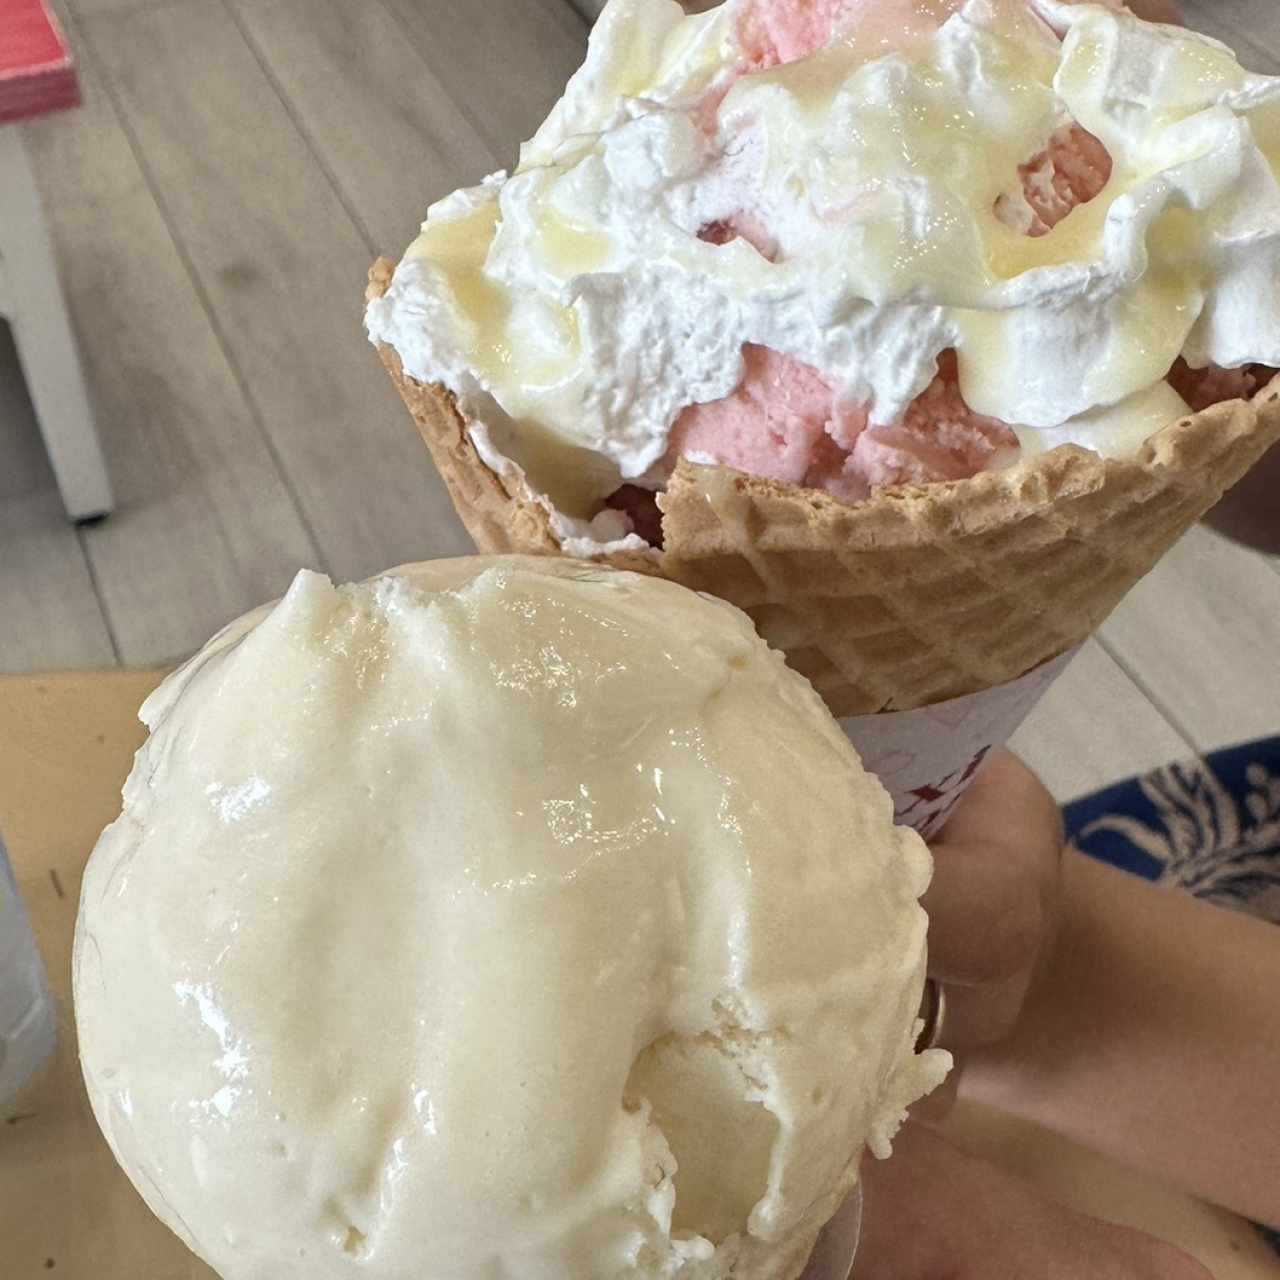 Maxi cono con helado de yogurt de fresa y helado de vainilla 